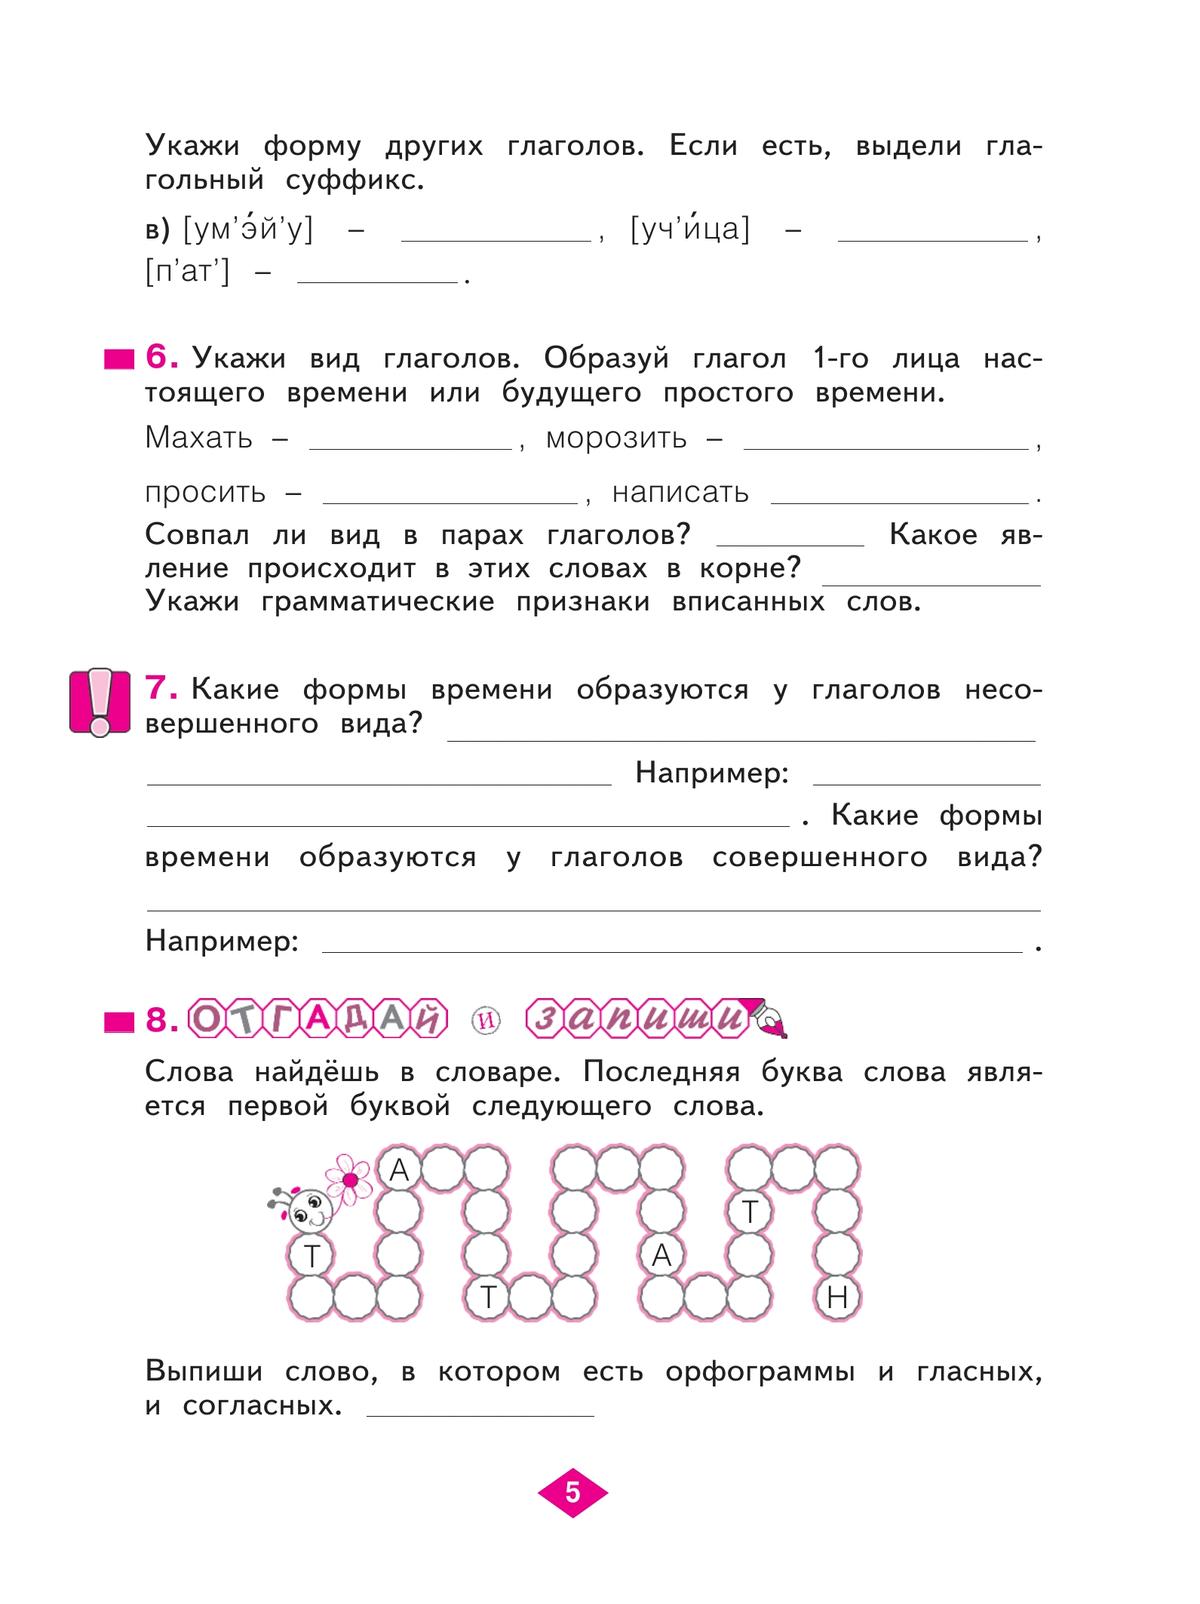 Русский язык. Рабочая тетрадь. 4 класс. В 4-х частях. Часть 3 4